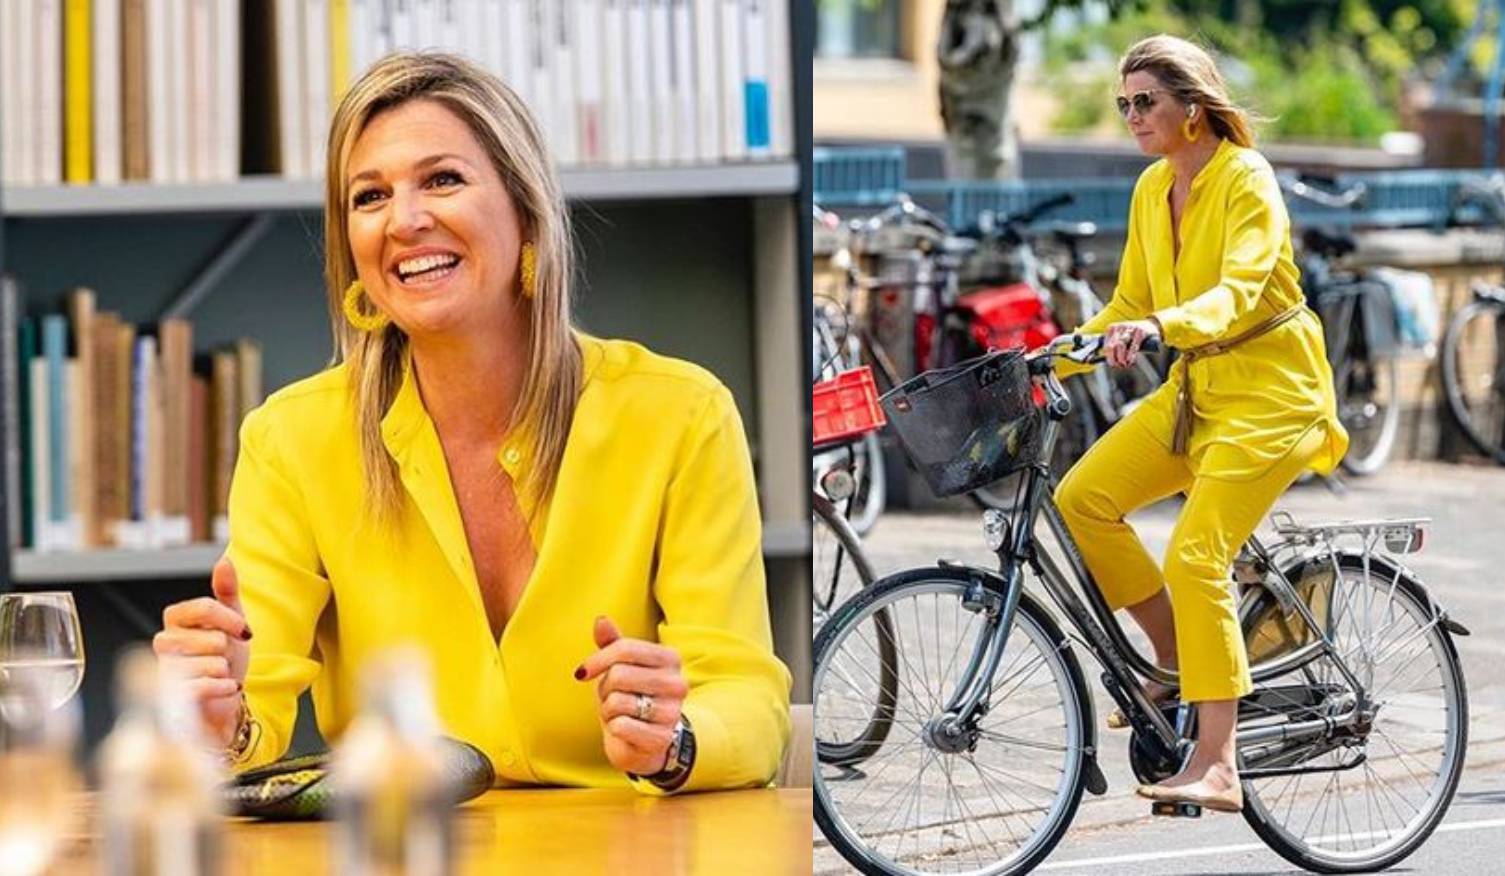 Royal žuta: Kraljica Maxima  na biciklu u odijelu sunčane nijanse